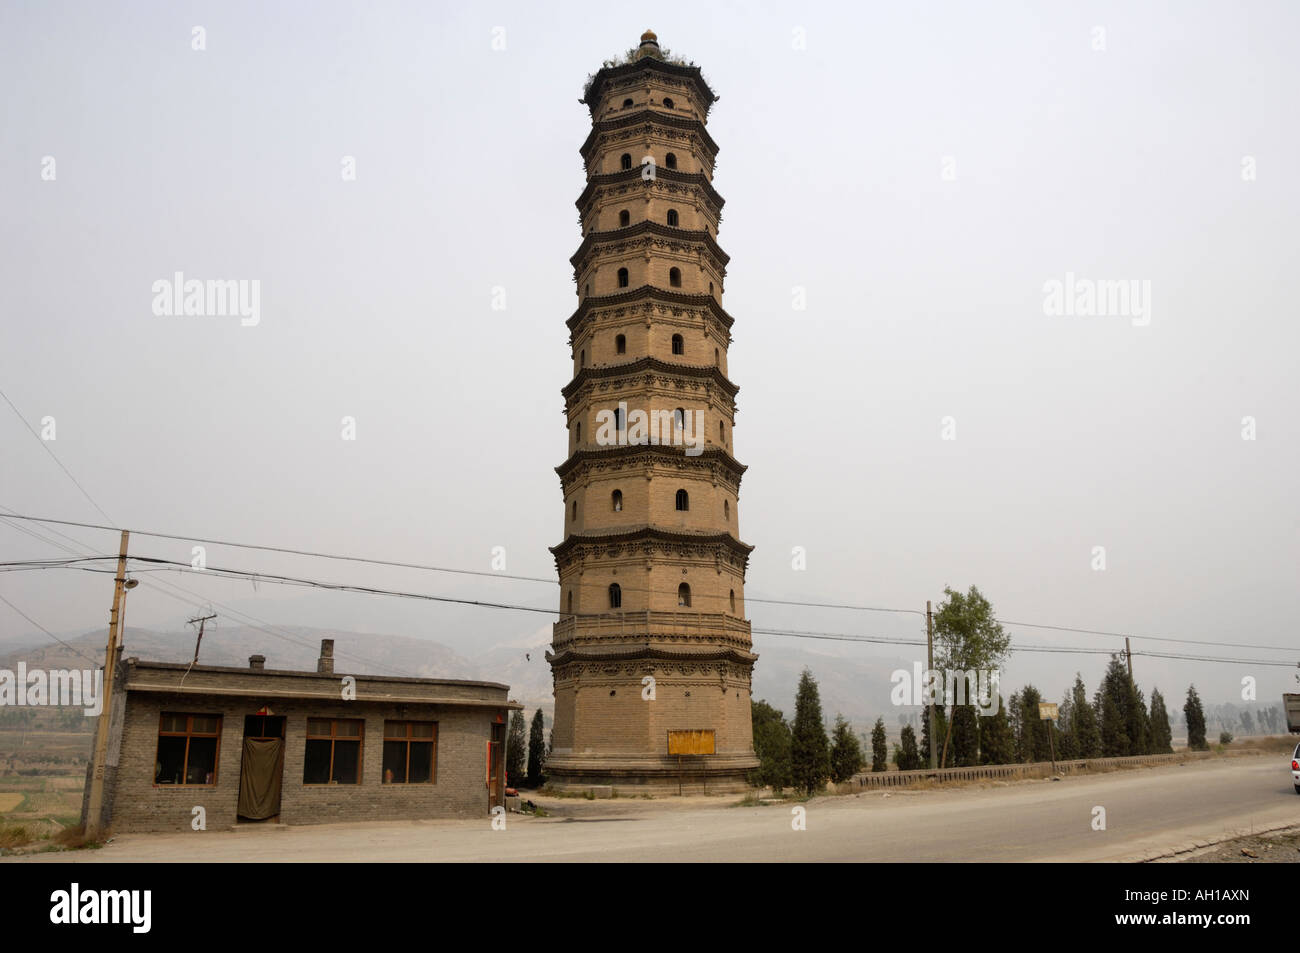 A Qing Dynasty Pagoda in Jiexiu Shanxi China 05 Jun 2007 Stock Photo